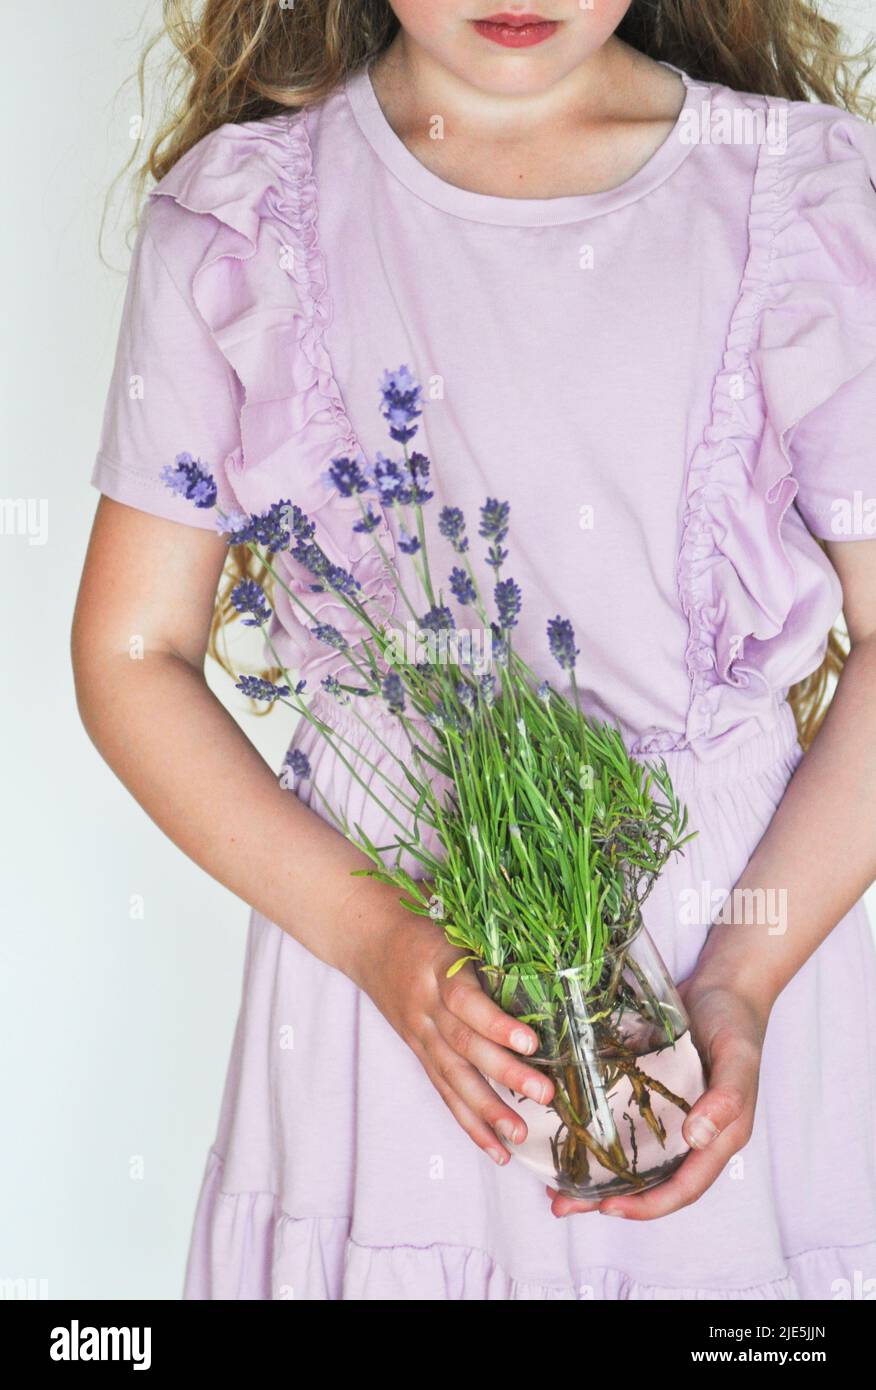 Jeune fille dans une robe de lavande pâle tenant un pot contenant des fleurs fraîchement cueillies de lavande sur un fond blanc Banque D'Images